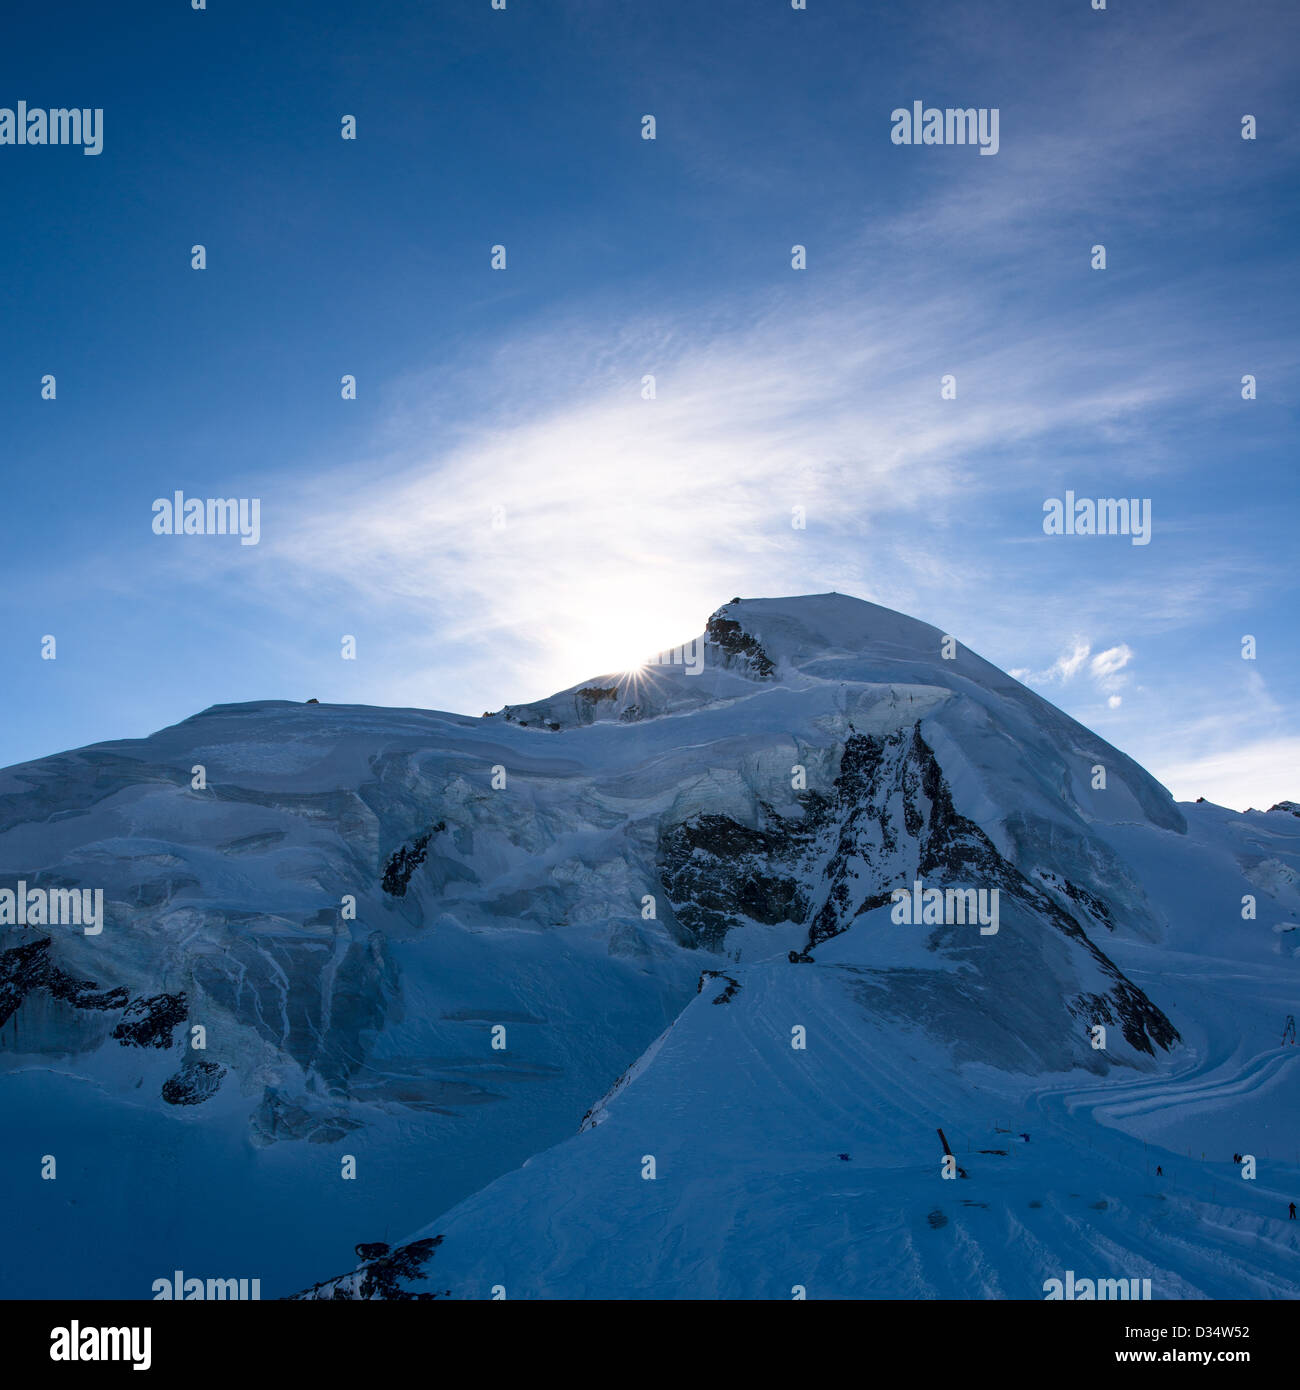 Allalinhorn mountain peak, view from Mittelallalin, Saas Fee, Valais, Switzerland Stock Photo